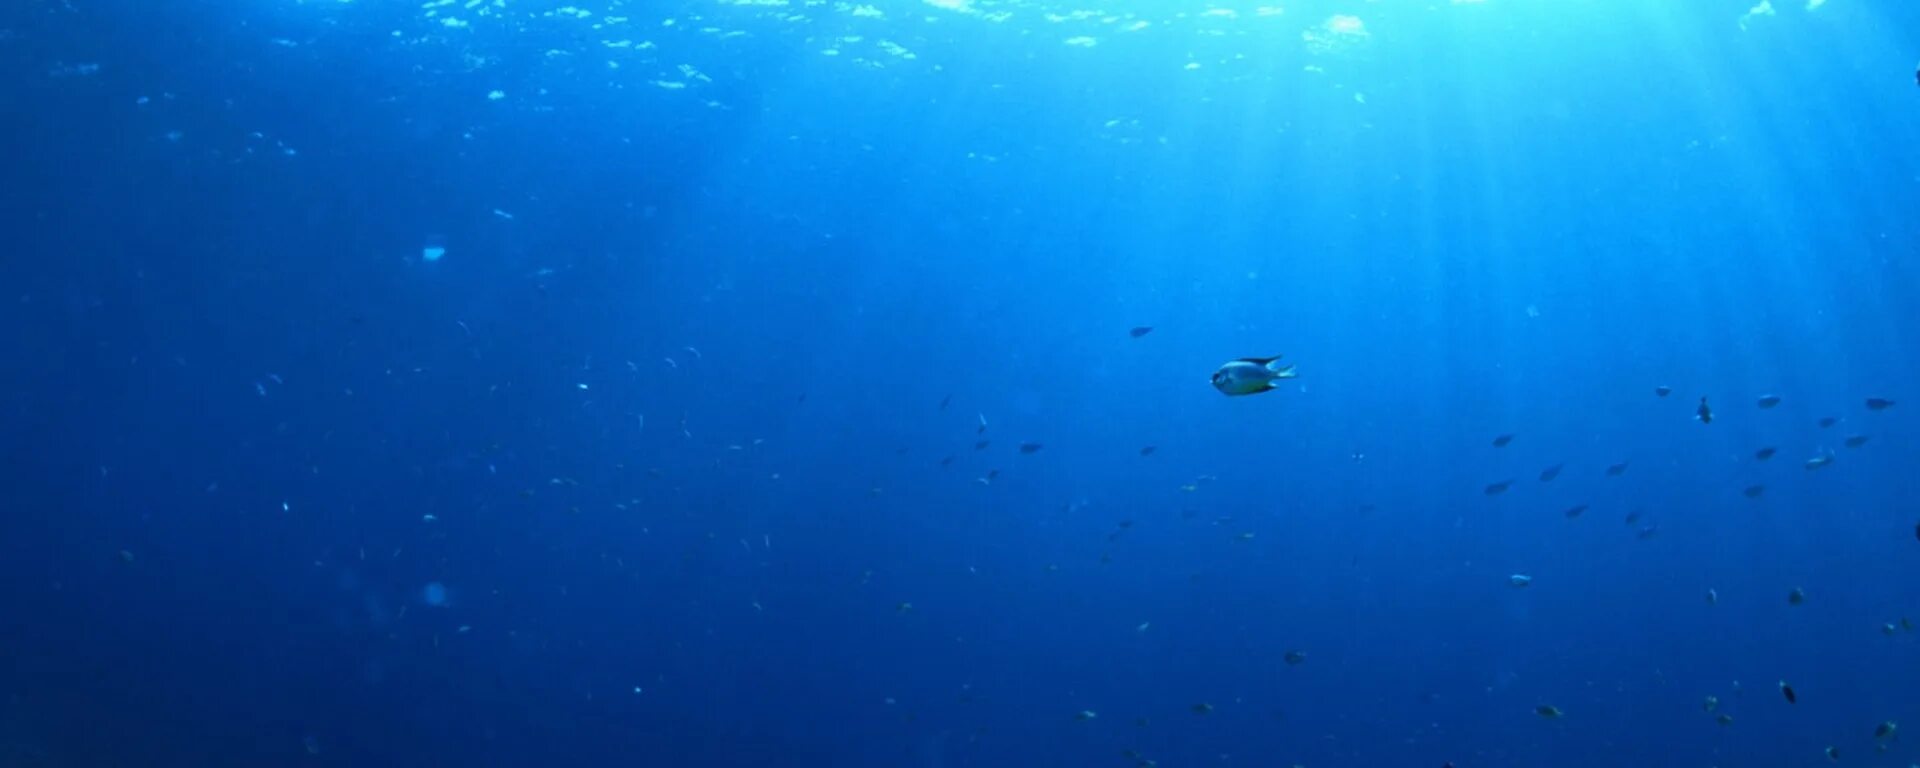 Тихий океан 2024. Фото дна океана с пузырями воздуха. Красивые обои на андроид длиный175 162 размер дельфины и дно океана. Water Silencers.